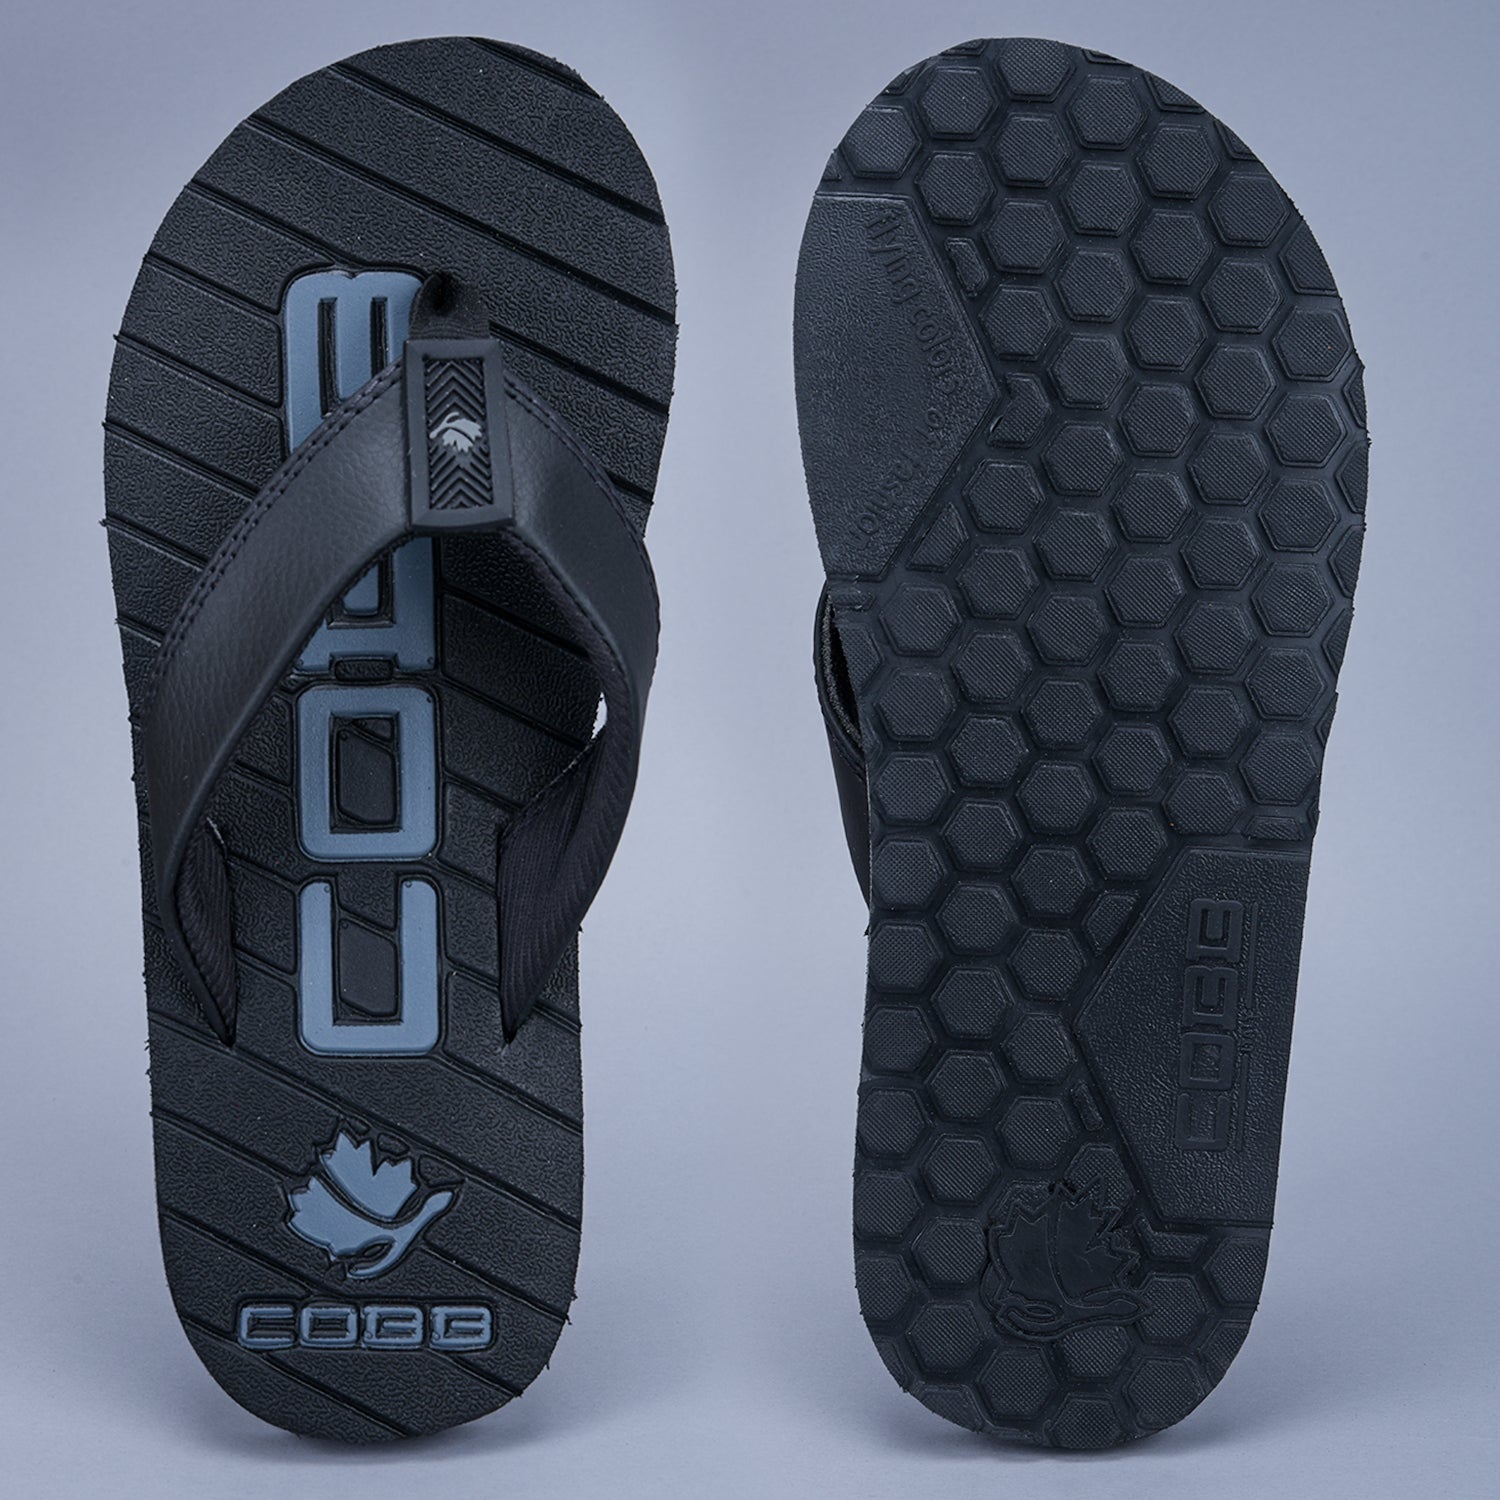 Cobb Mens Black Slippers